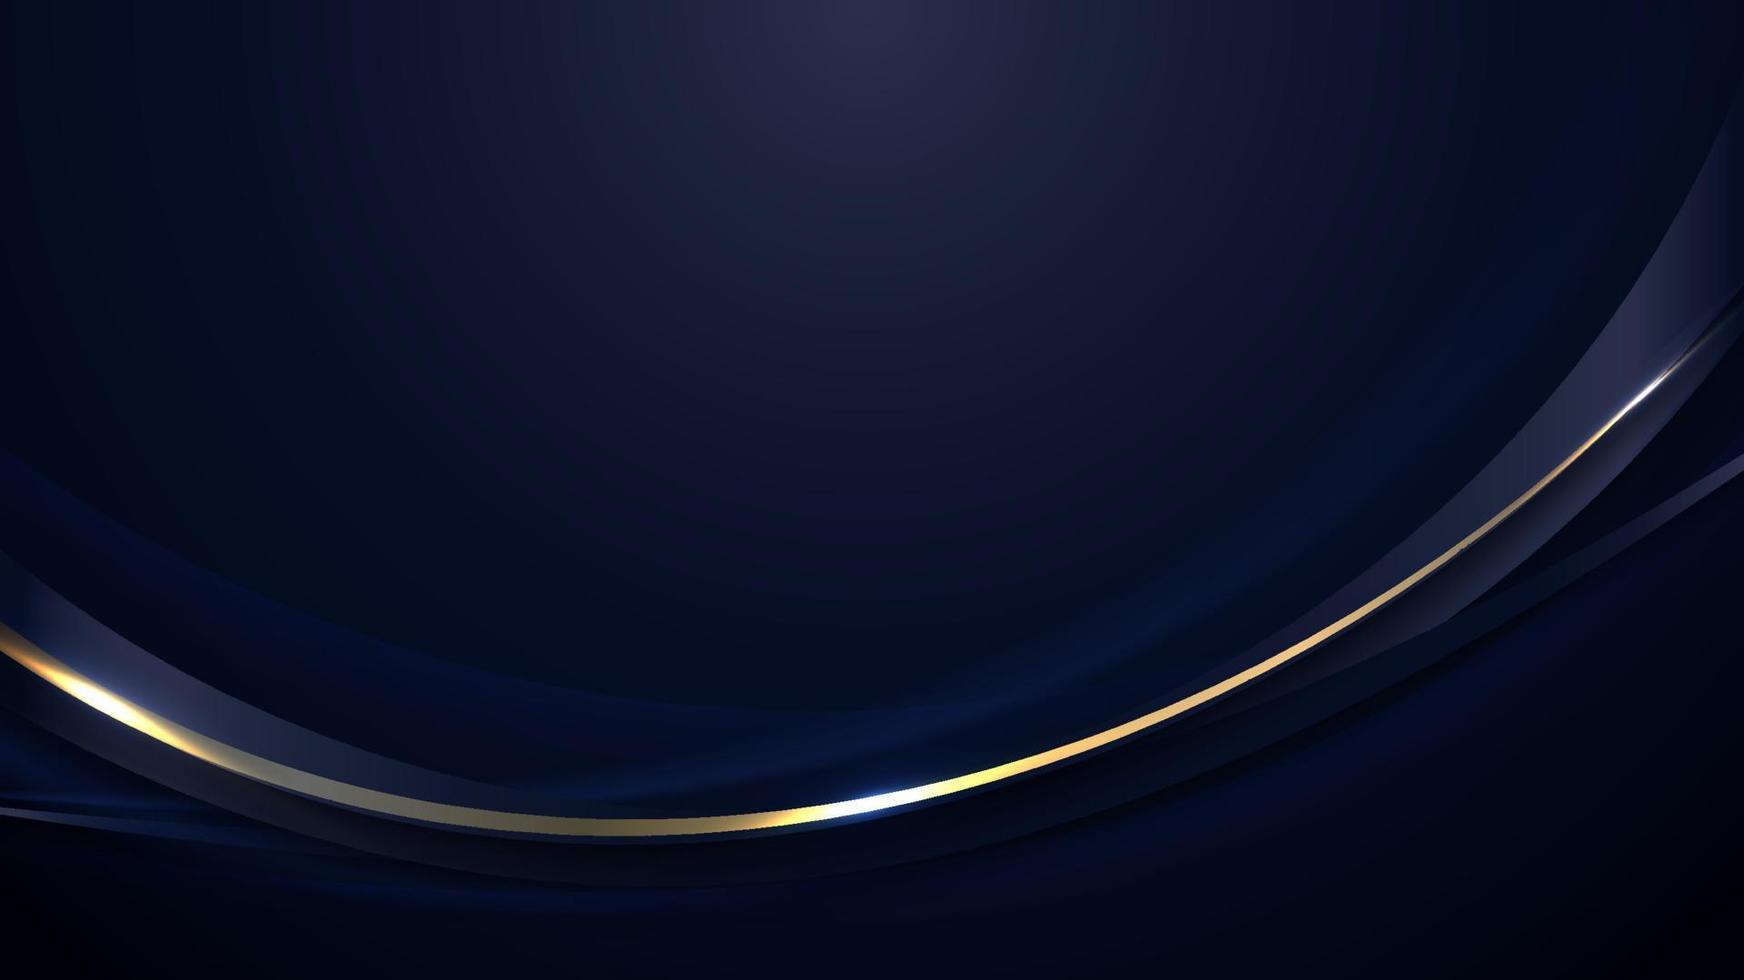 banner webbmall abstrakt blå och gyllene böjda linjer överlappande lager design på mörkblå bakgrund vektor